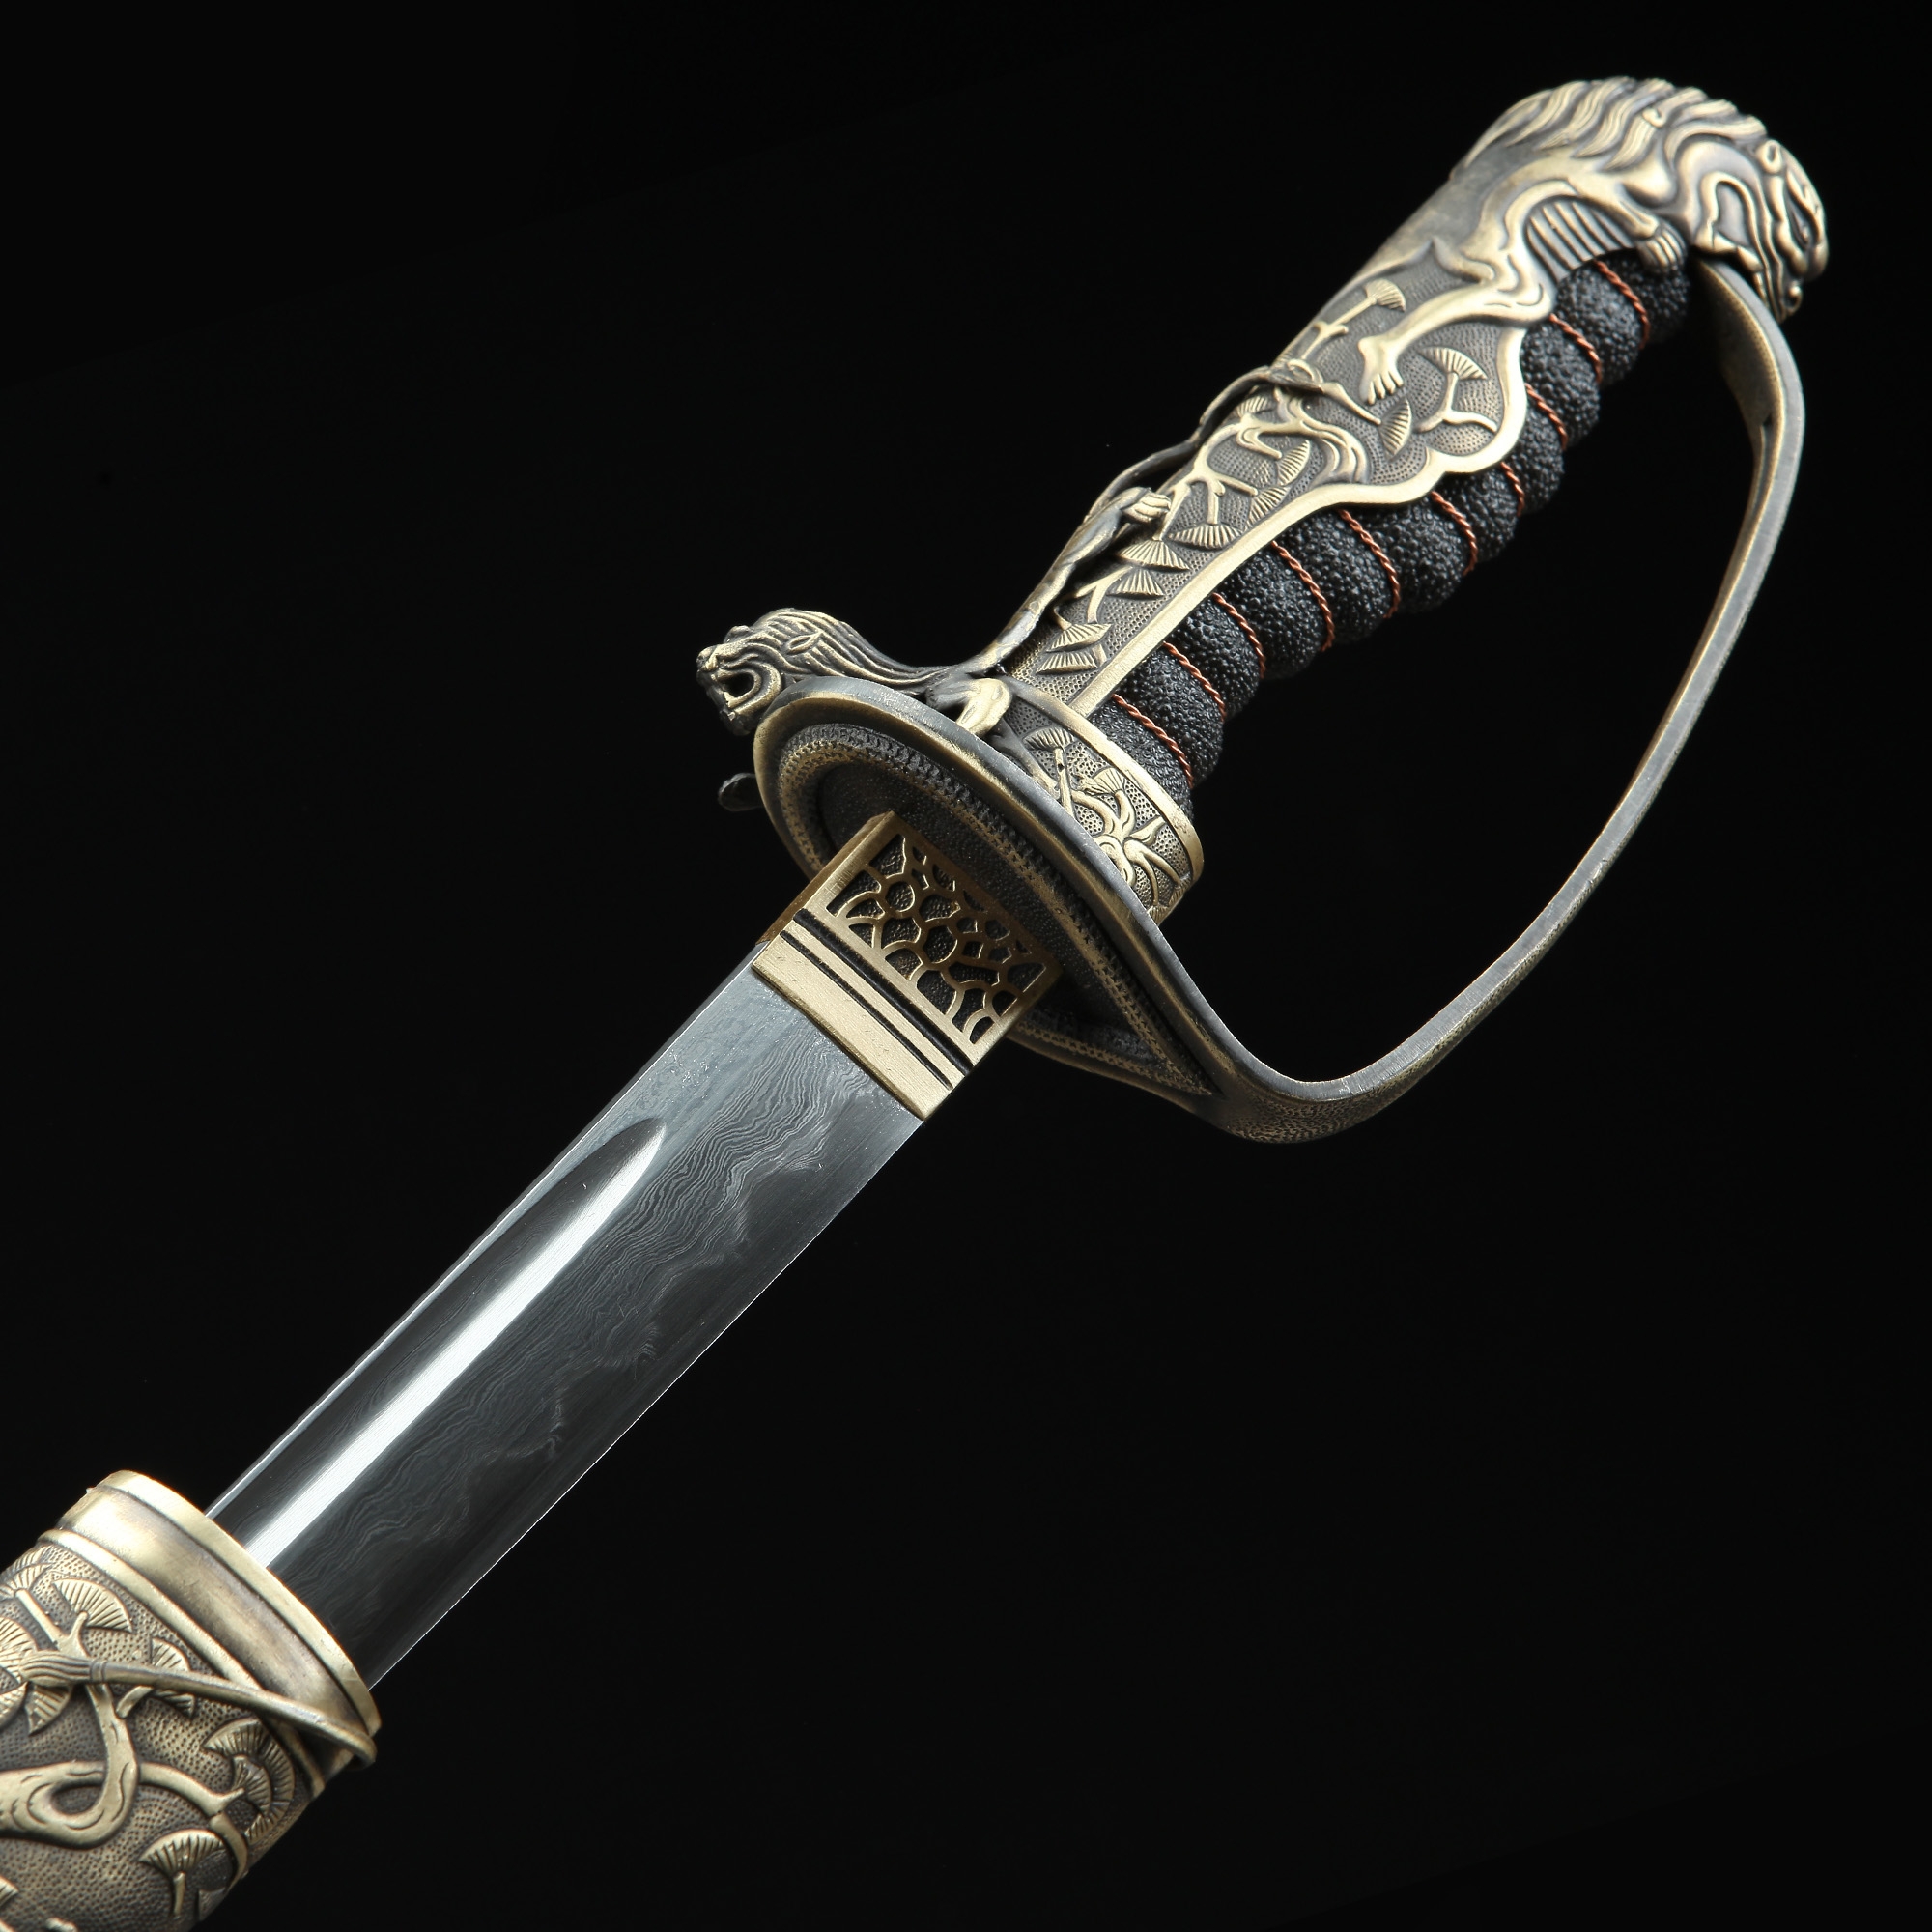 buy real katana sword